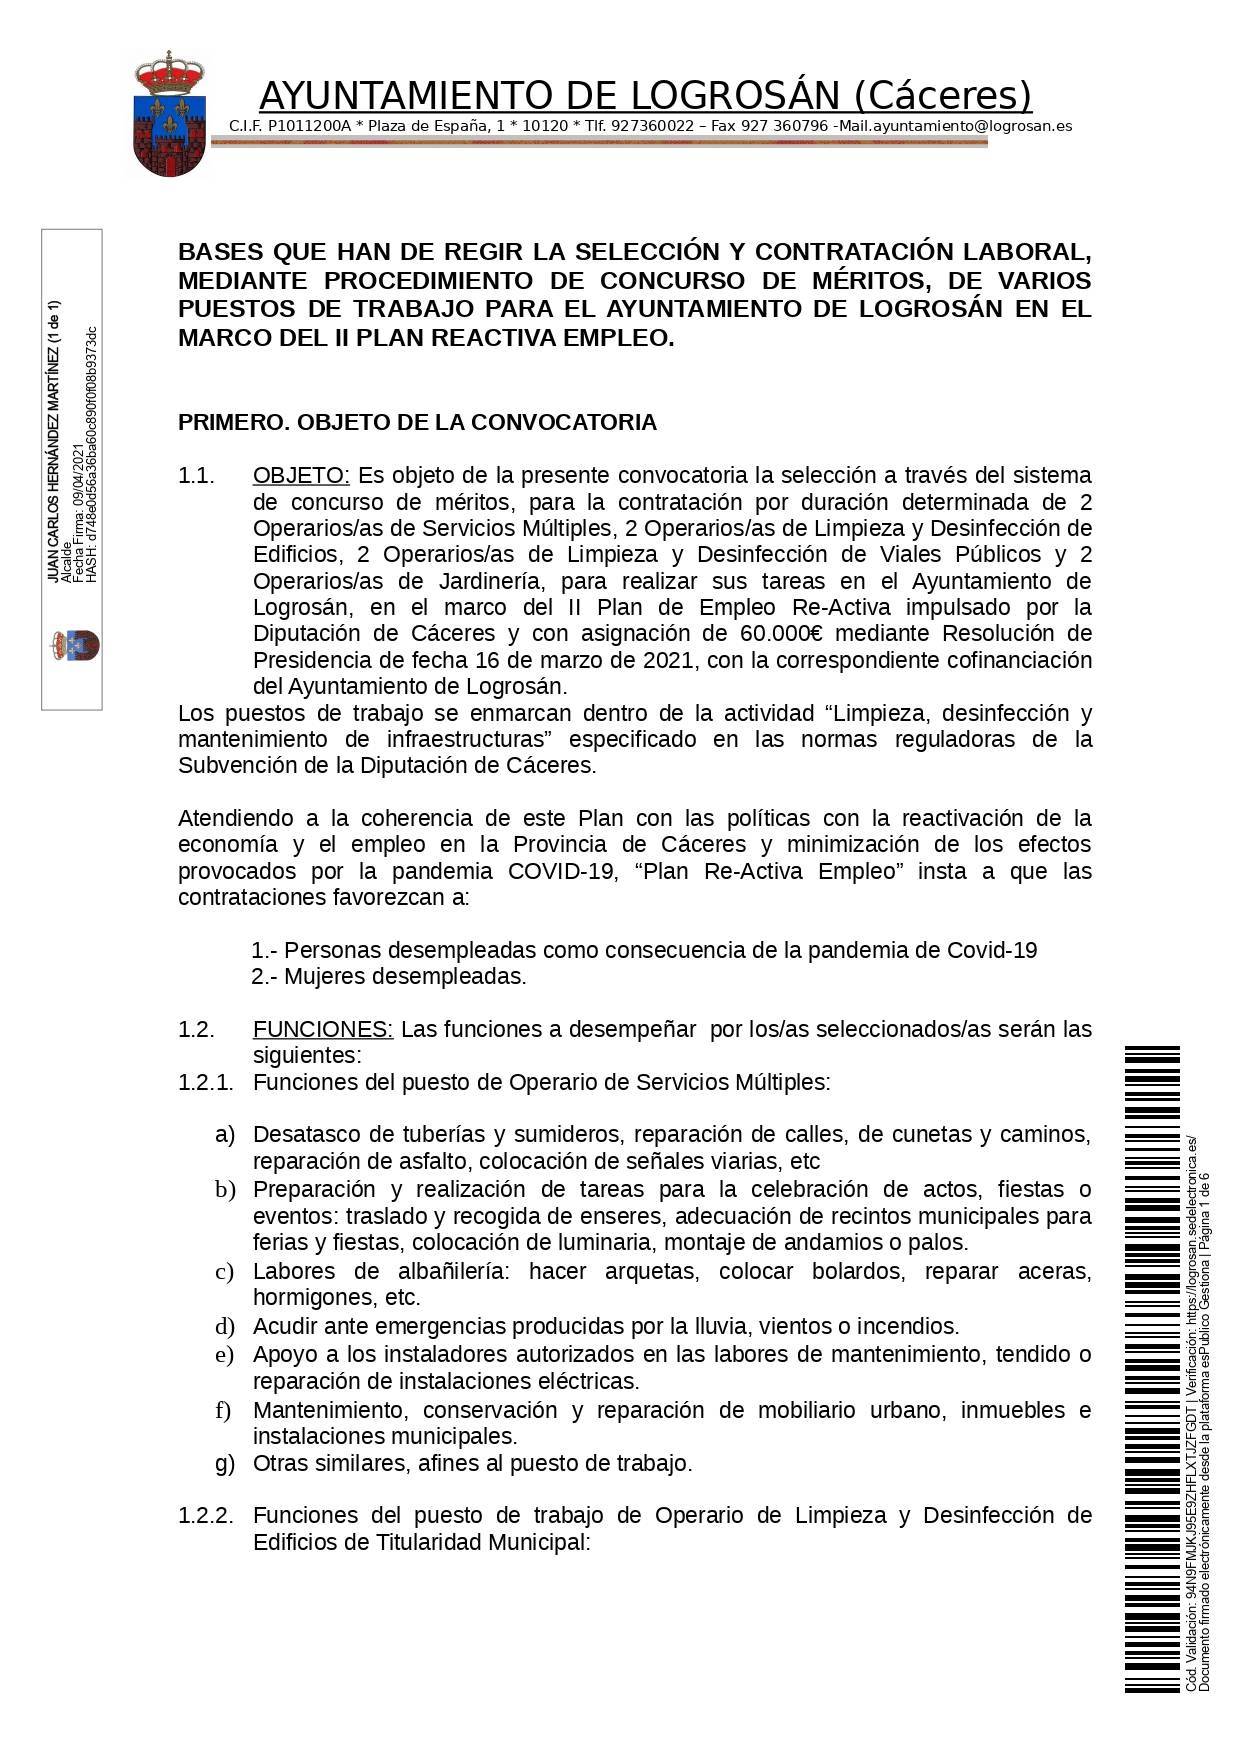 Bases para 8 puestos de trabajo (2021) - Logrosán (Cáceres) 1